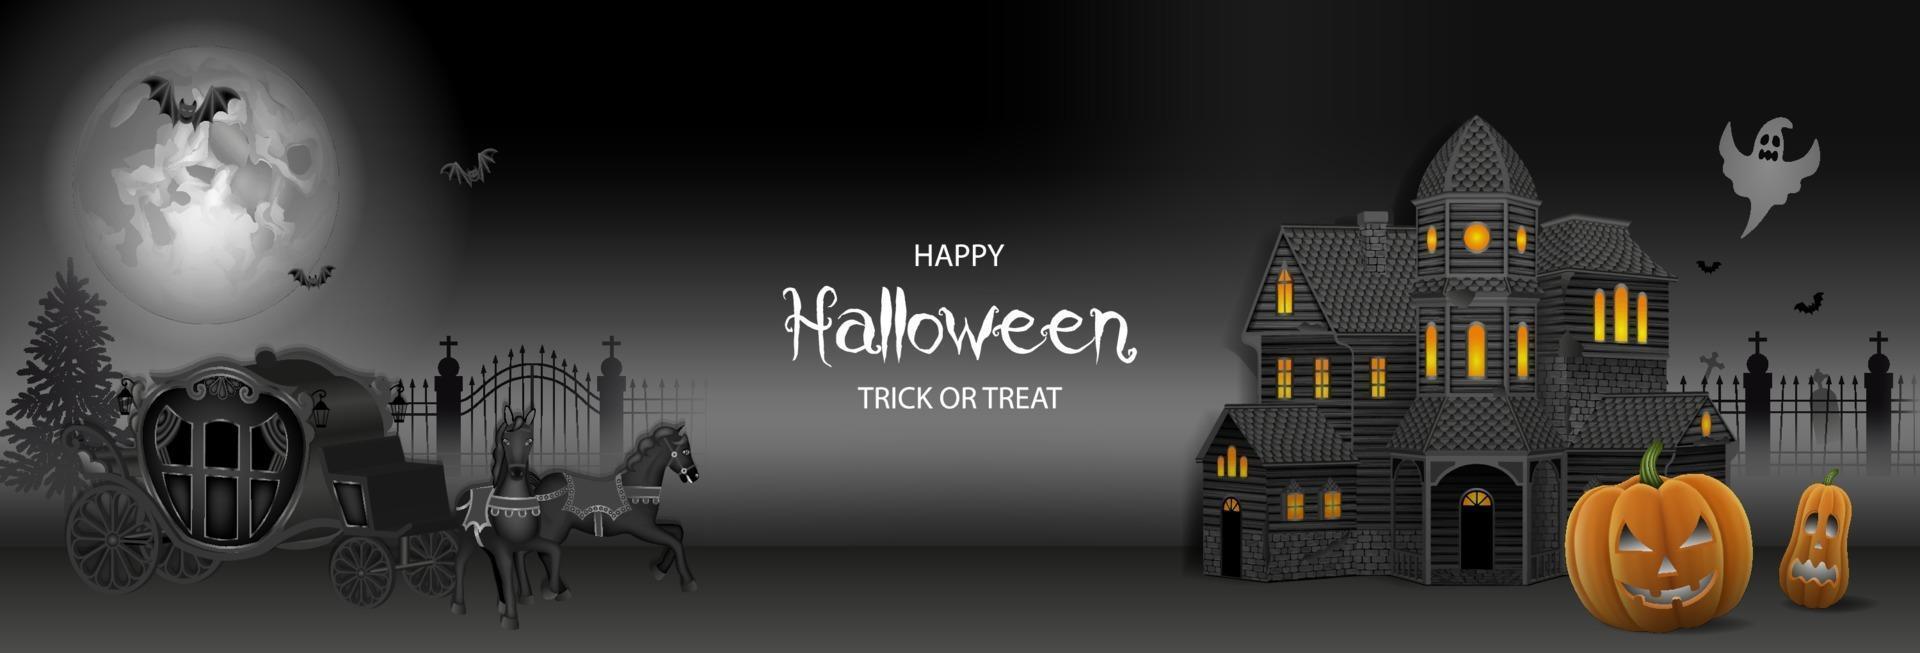 banner de halloween con casa embrujada, calabazas y carruaje viejo vector